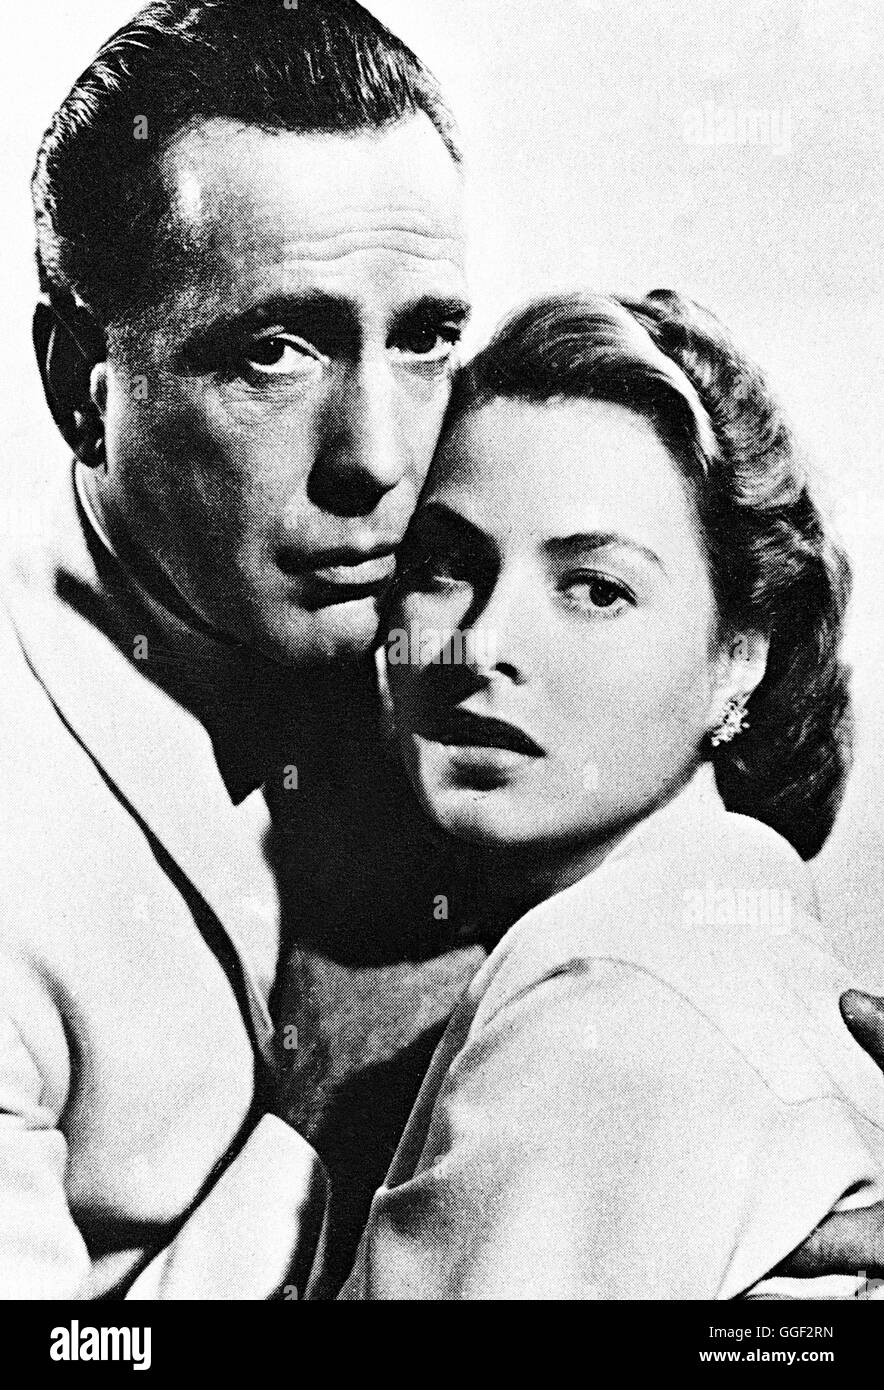 CASABLANCA / Casablanca / Die Schauspielerin INGRID BERGMAN - Foto: 'Casablanca' (USA 1942, Szene mit Humphrey Bogart) aka. Casablanca Stock Photo